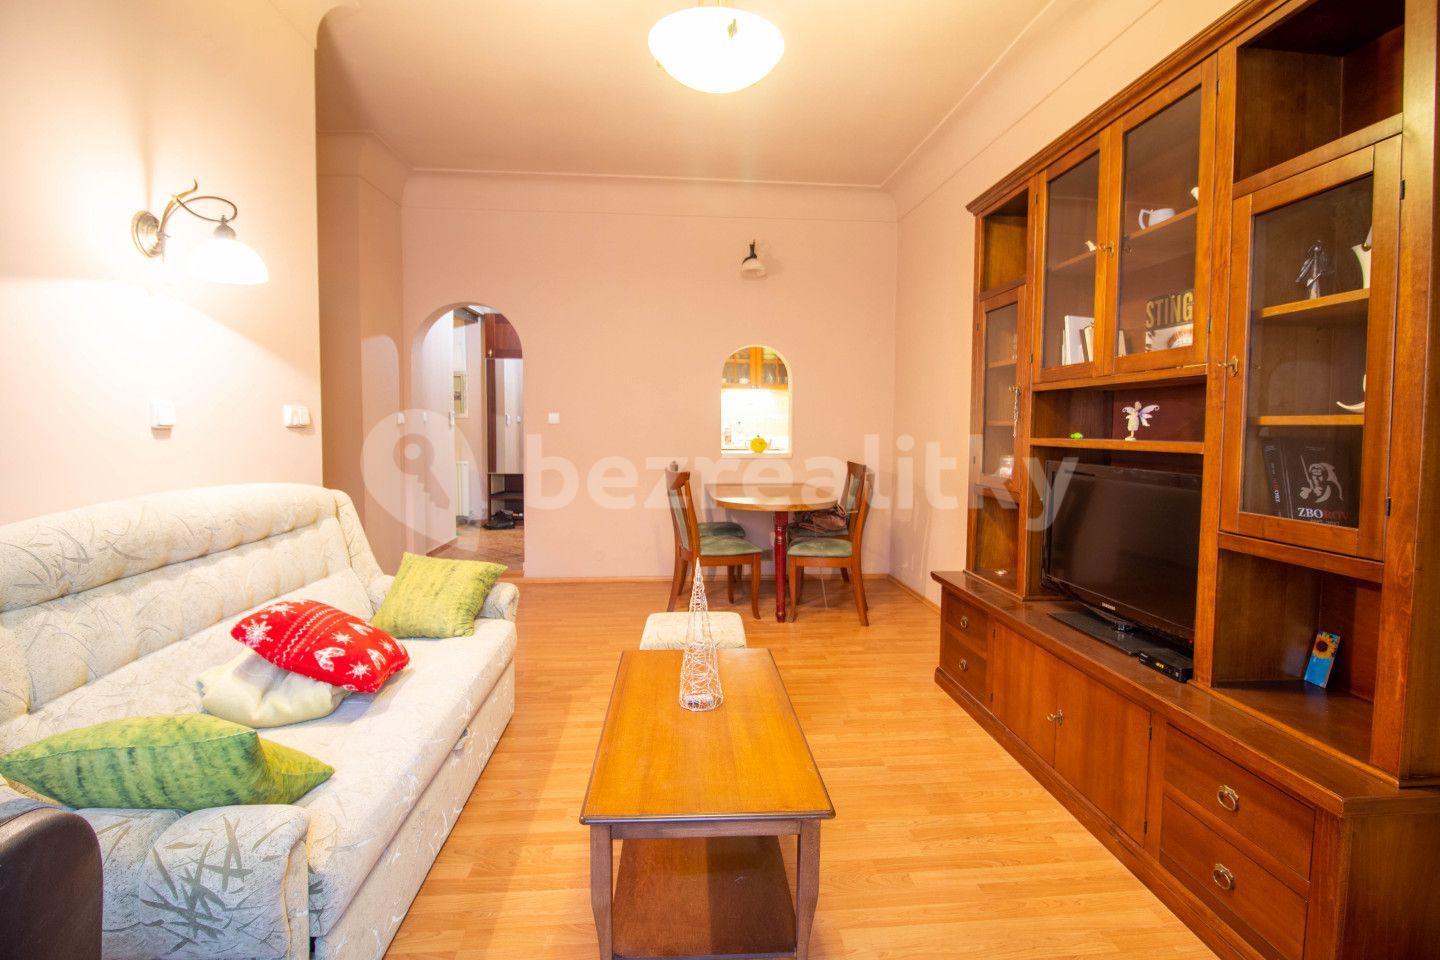 1 bedroom with open-plan kitchen flat for sale, 44 m², Betlémské náměstí, Prague, Prague